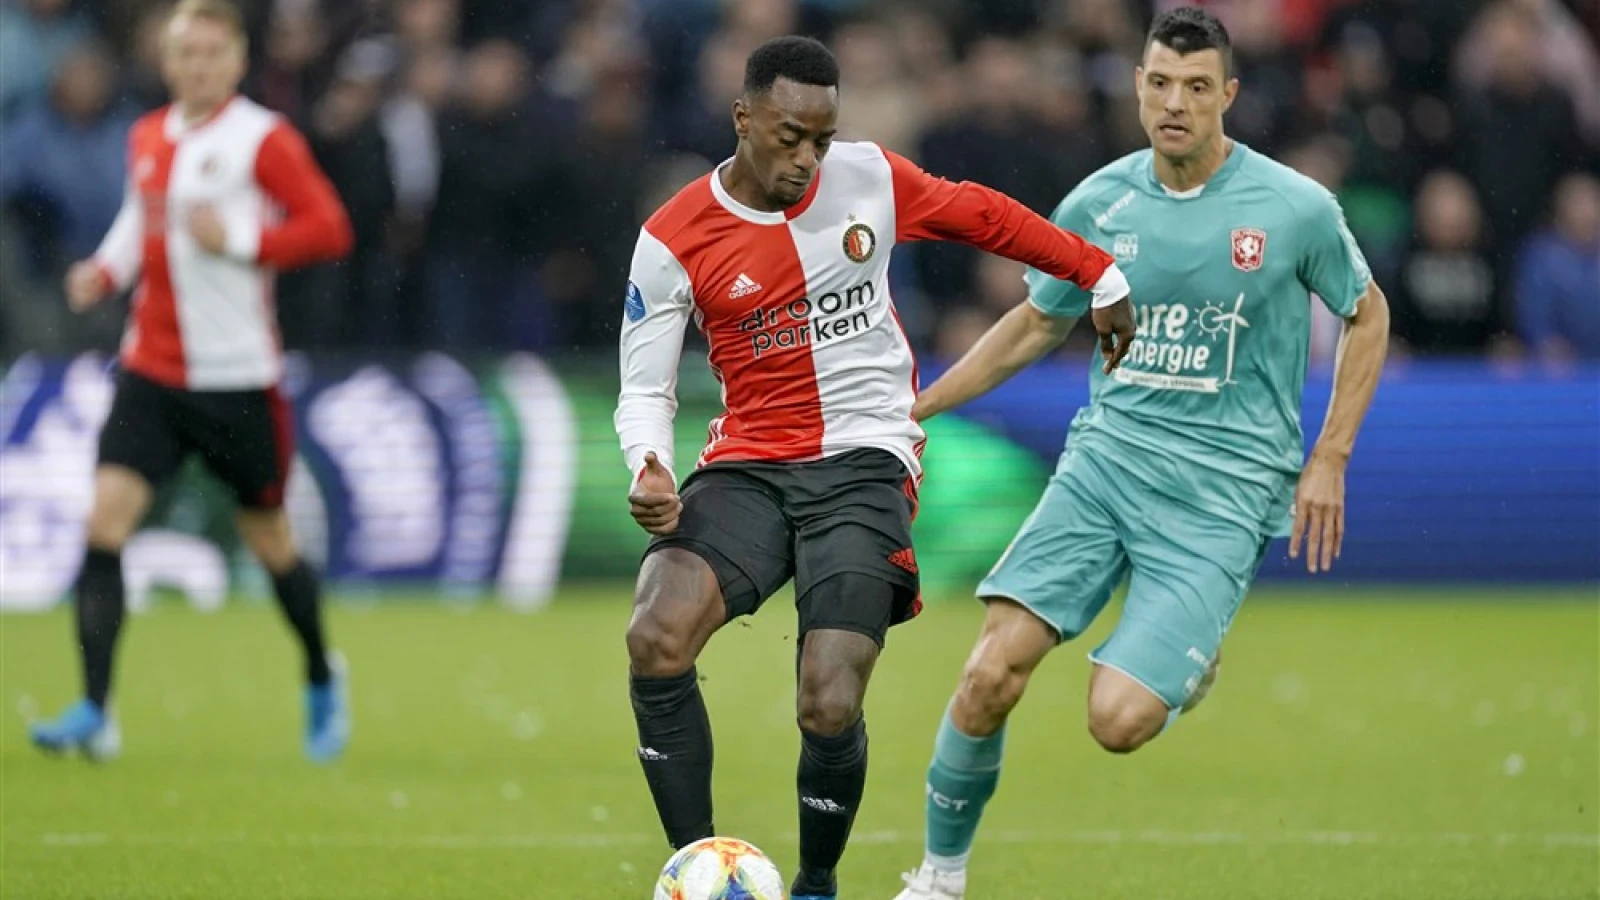 LIVE | Feyenoord - FC Twente 5-1 | Einde wedstrijd